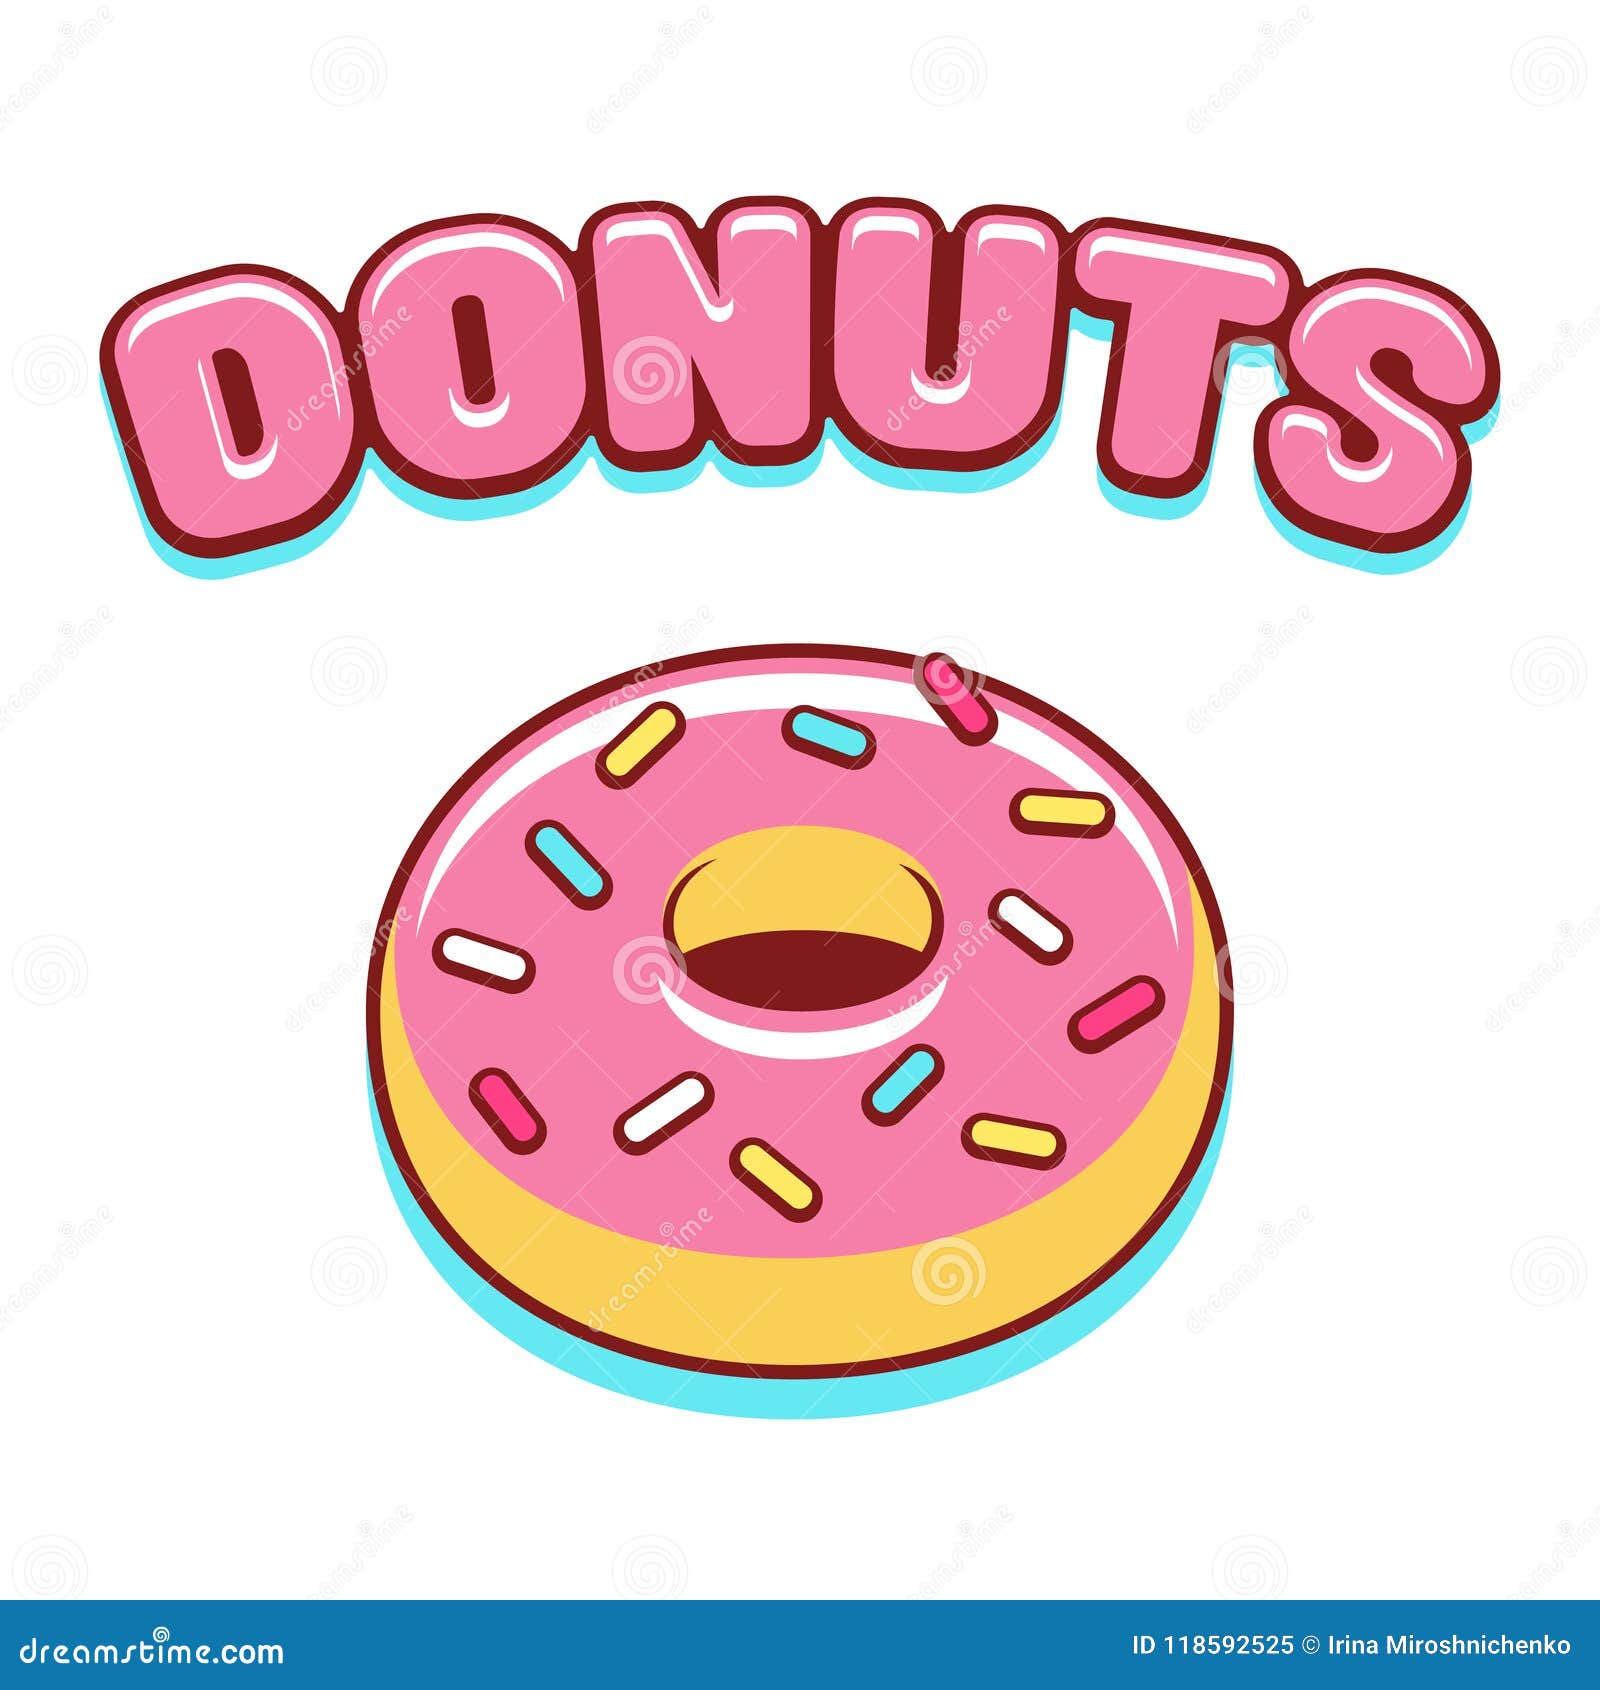 Cartoon donut illustration stock vector. Illustration of element - 118592525